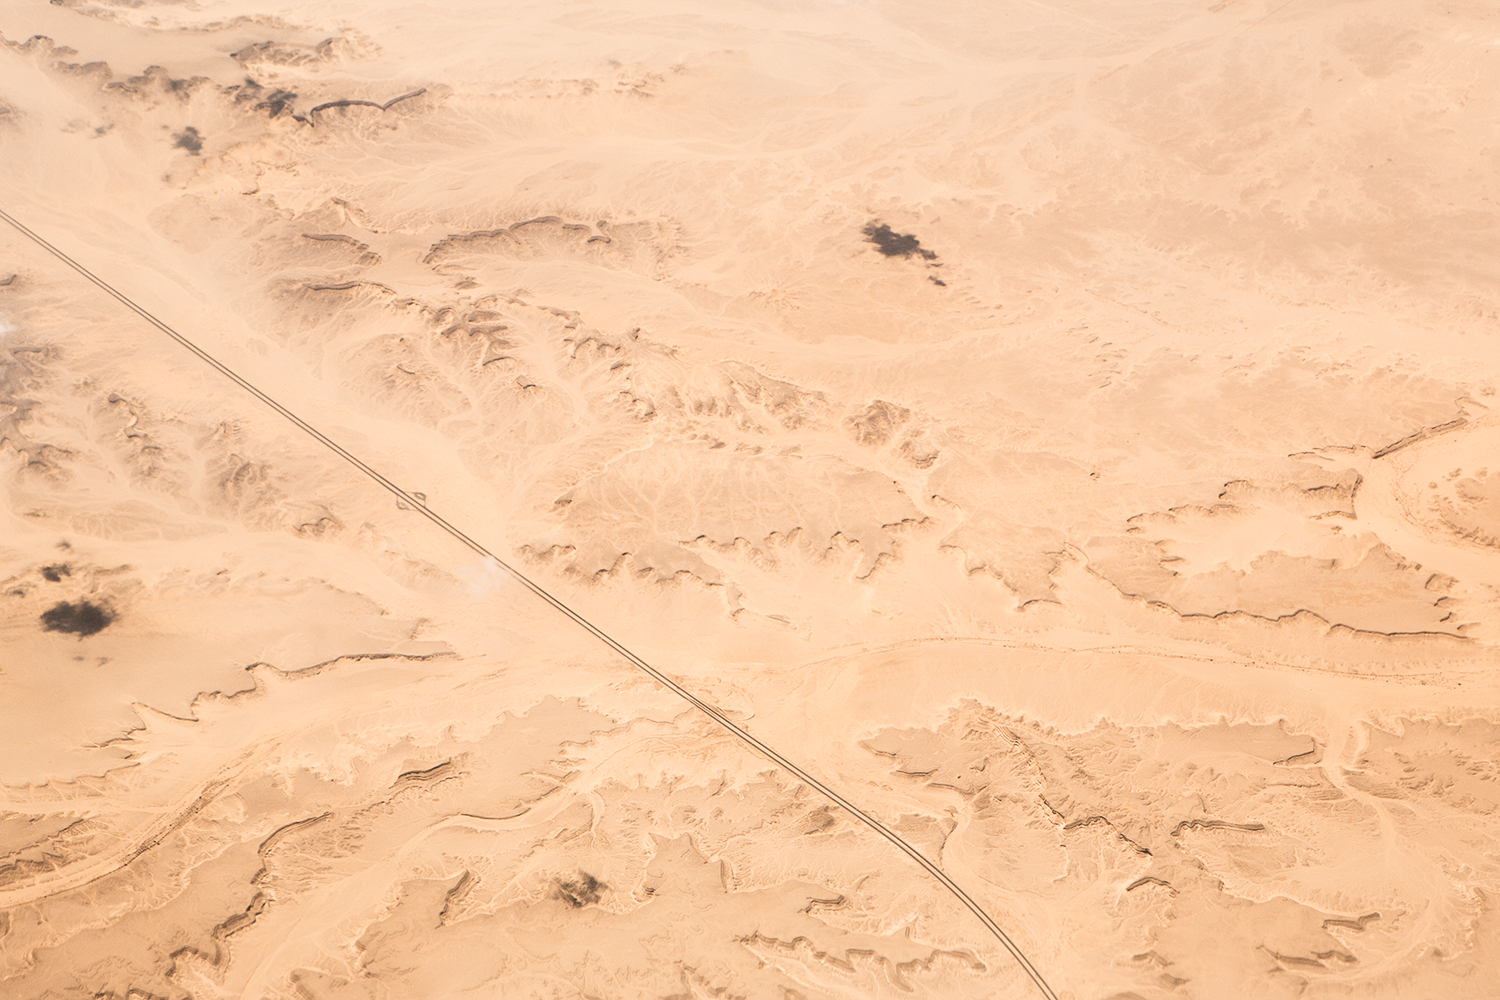  Deserts - Survey #1, 2015 //  80 cm x 120 cm  